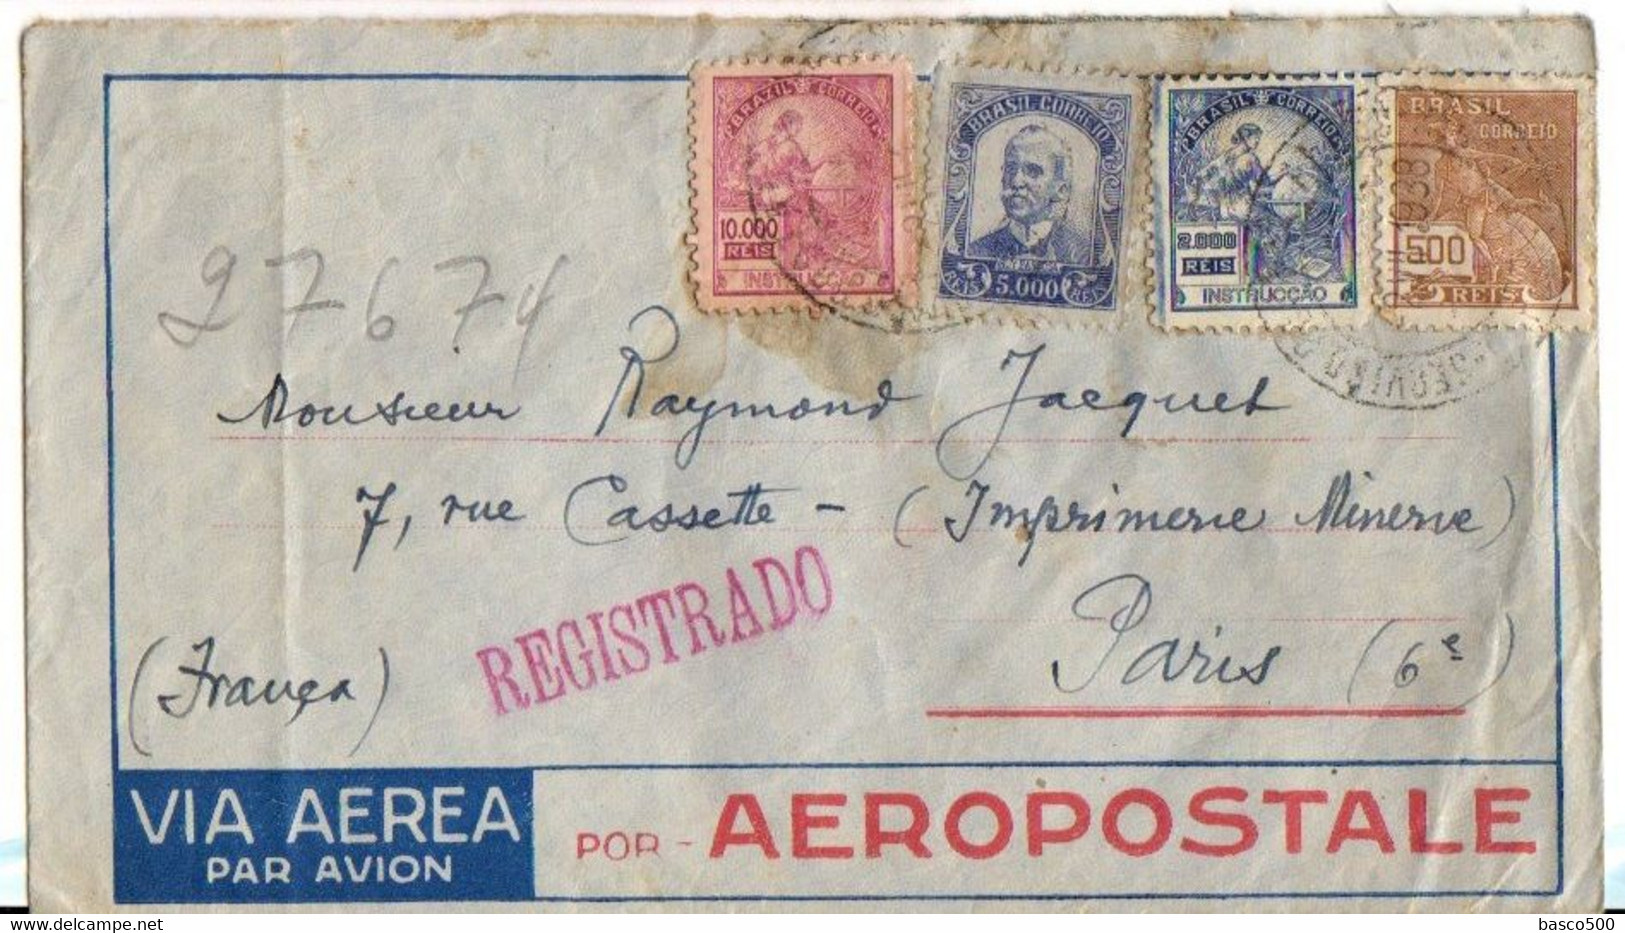 1938 - Lettre Recommandée AEROPOSTALE De RIO Vers PARIS - Airmail